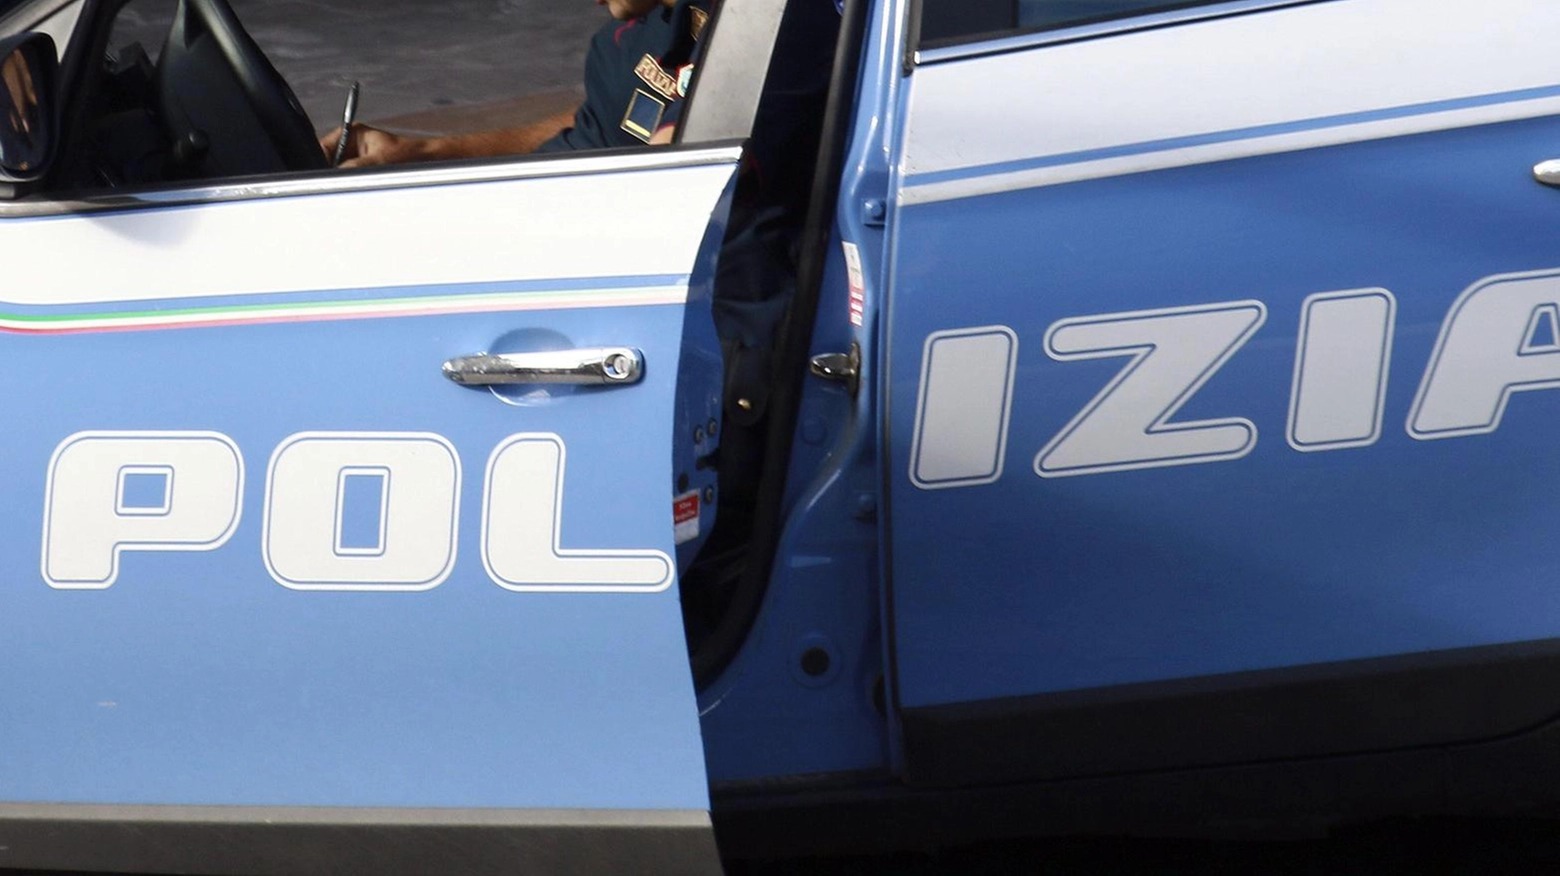 La Squadra mobile di Ancona ha eseguito l'ordine di detenzione in carcere per un 47enne italiano con 4 condanne per un totale di 9 anni e un mese, per reati commessi tra il 2010 e il 2017. Dopo un breve periodo in detenzione domiciliare, è stato arrestato per coinvolgimento in liti.